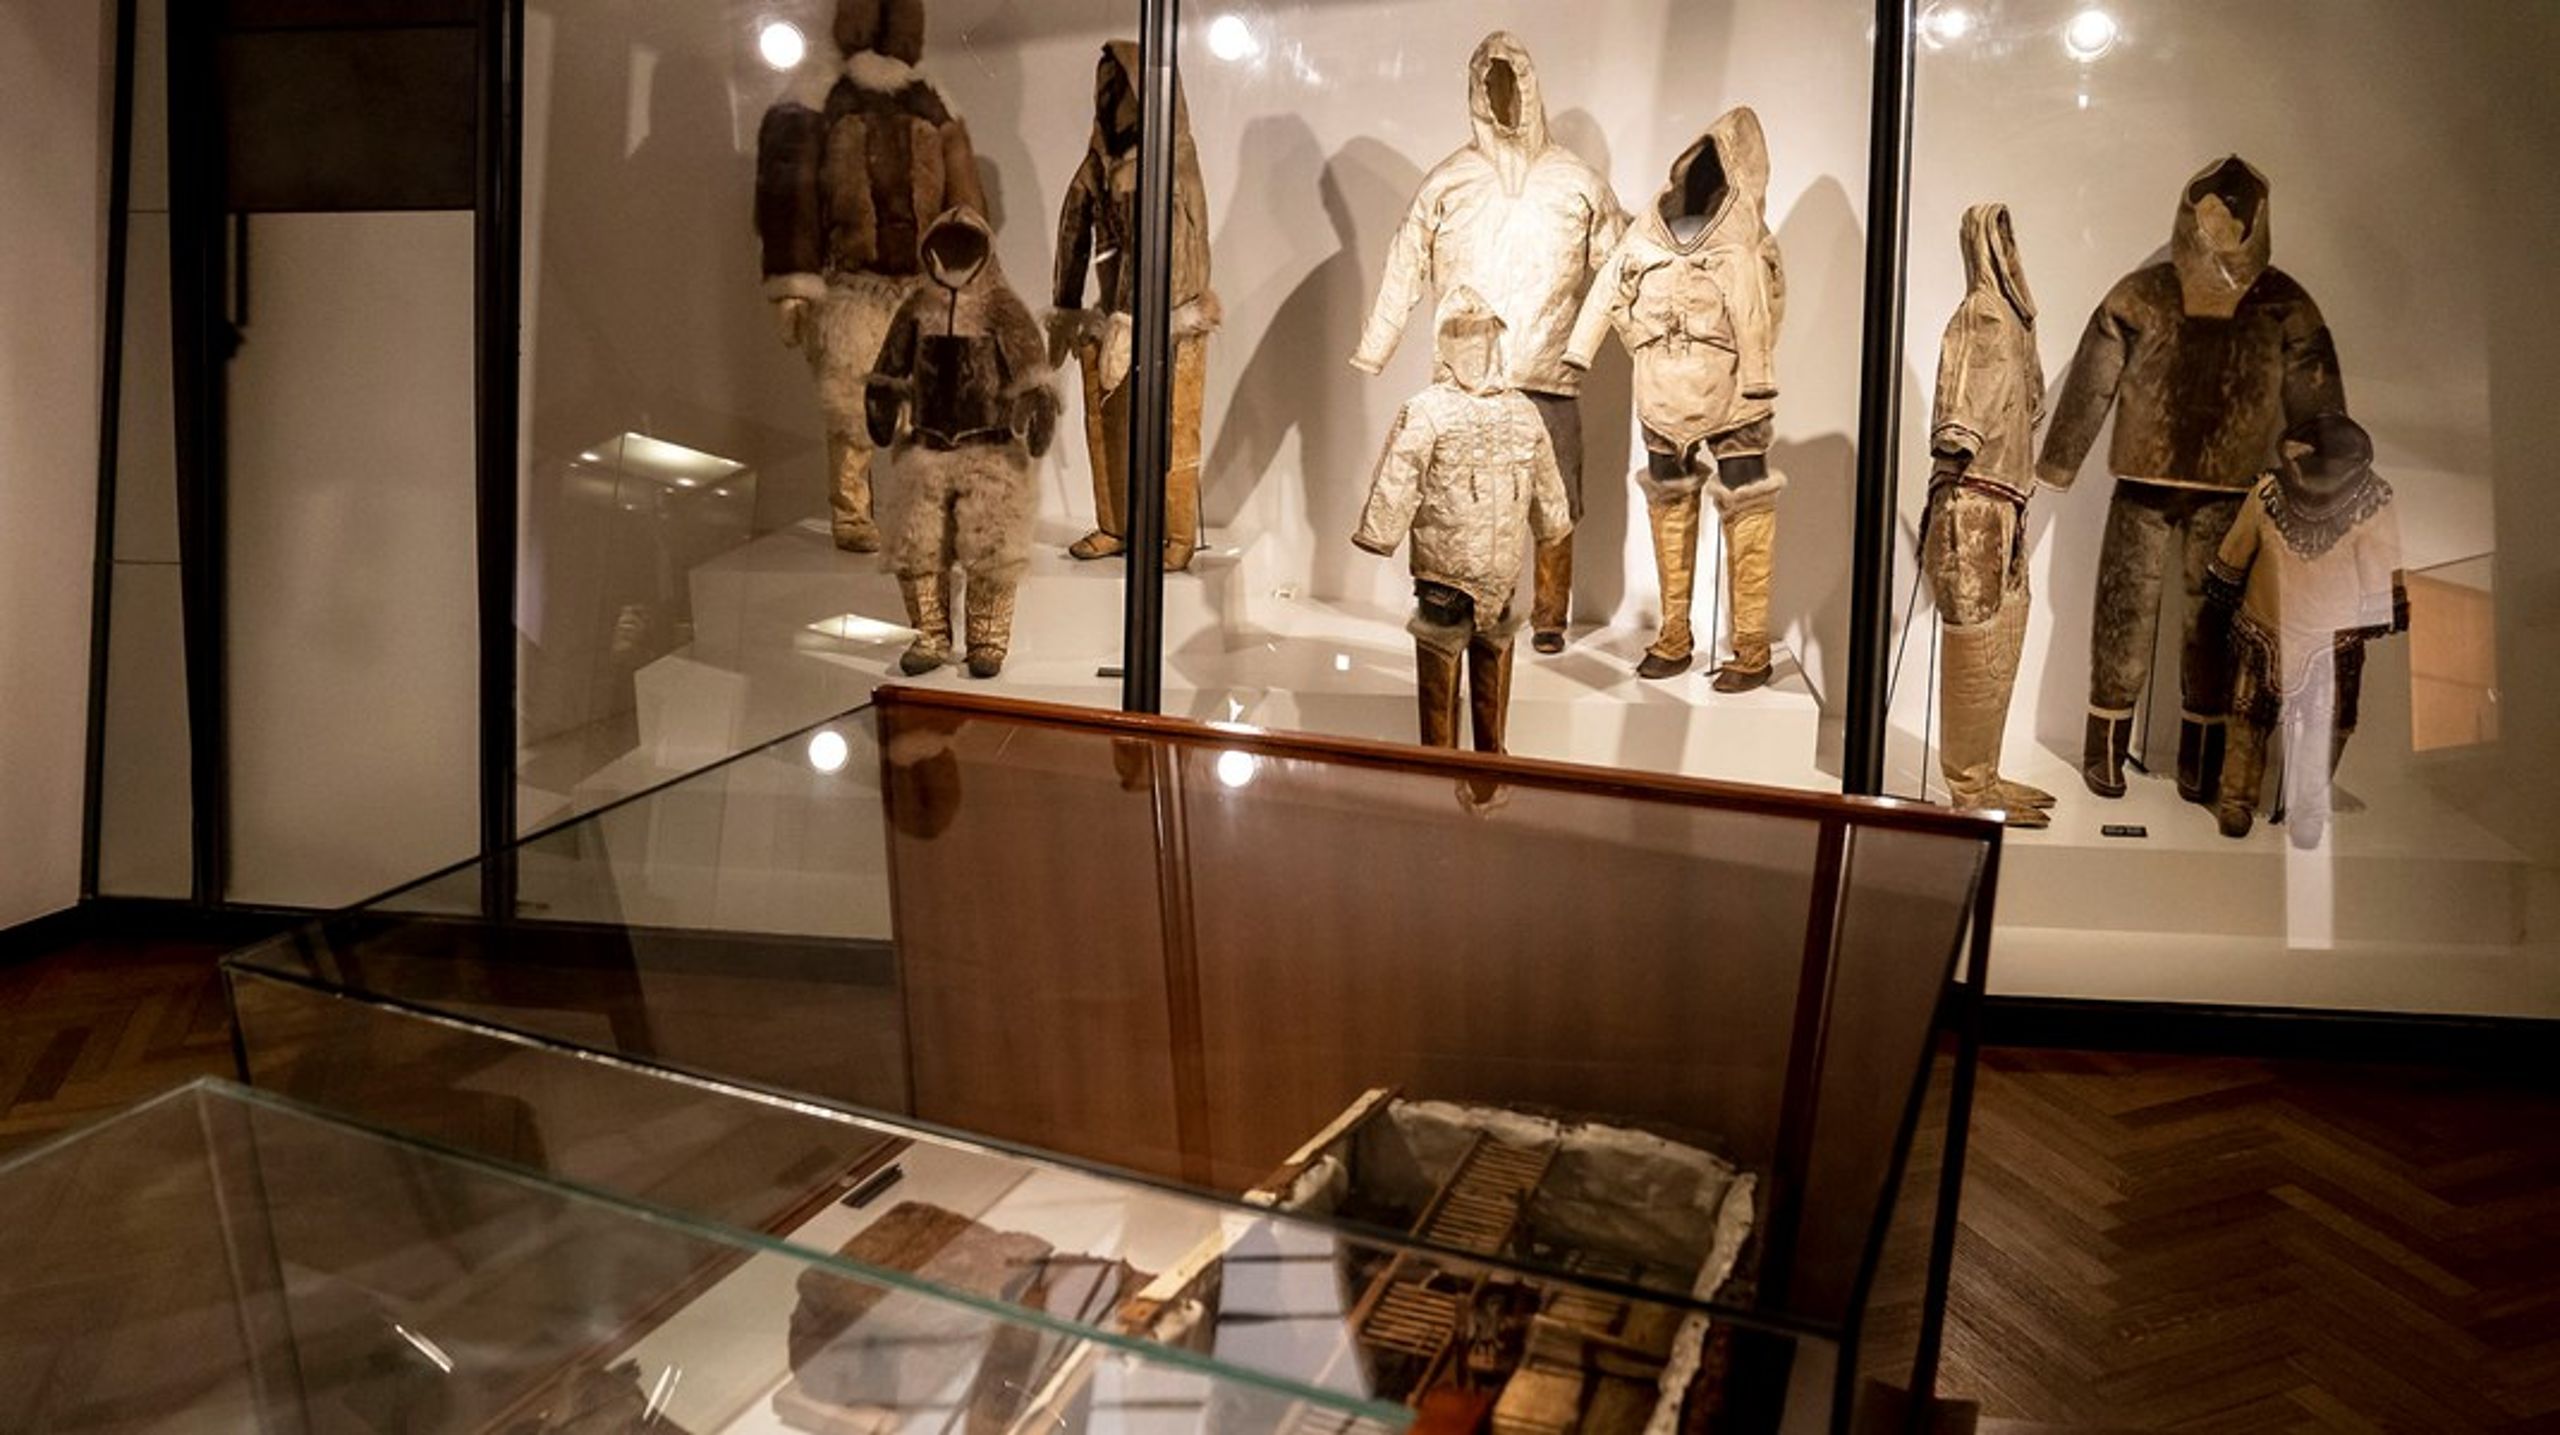 Proveniensforskning er&nbsp;et af de hastigt voksende forskningsområder i disse år, og museerne bruger mange ressourcer på at afklare, hvordan genstande er kommet ind i samlingerne, skriver Vinnie Nørskov. Arkivfoto fra Nationalmuseet.